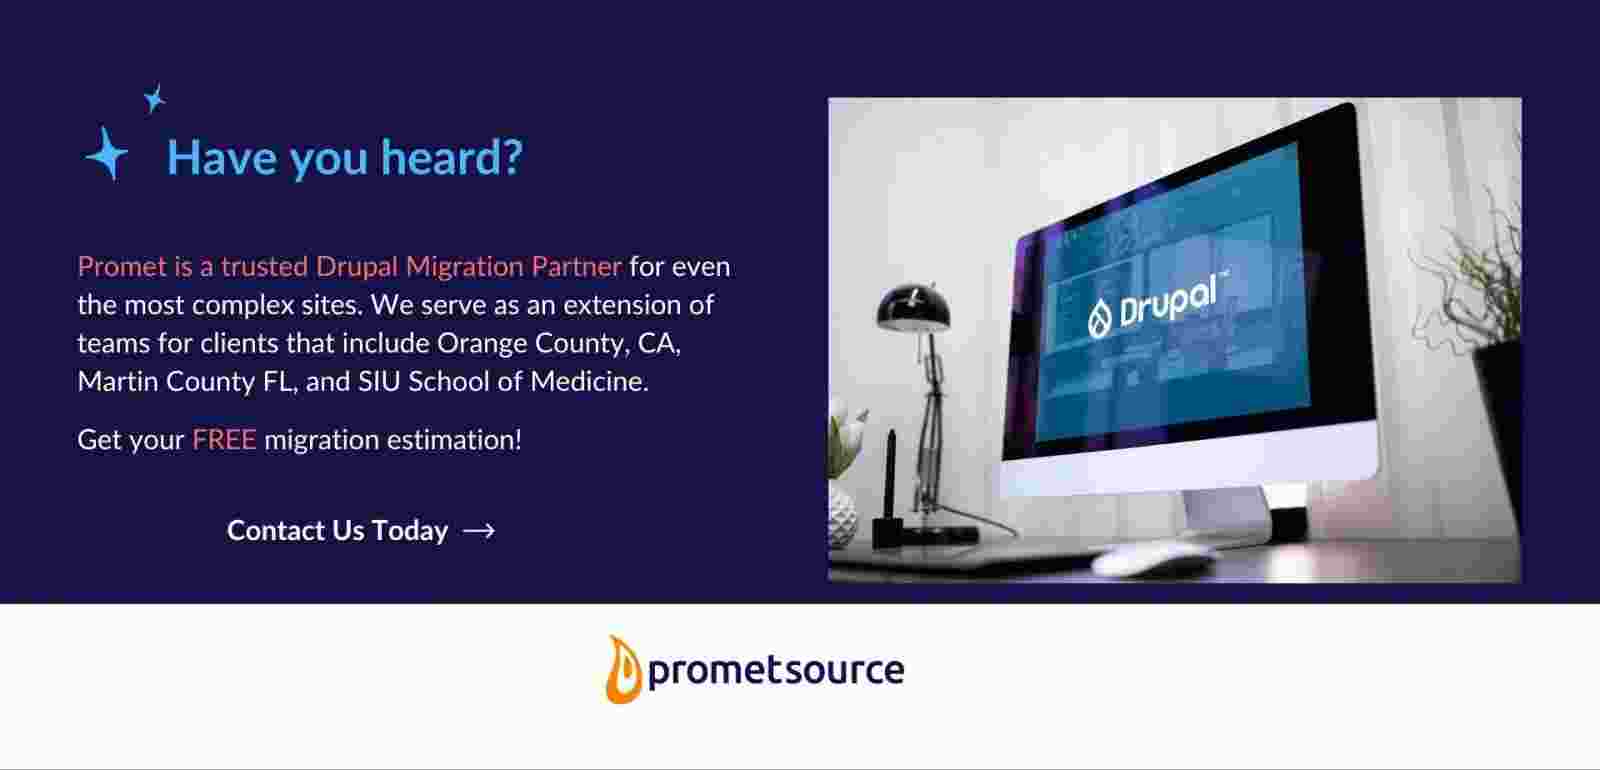 Promet Source is a certified Drupal migration partner.